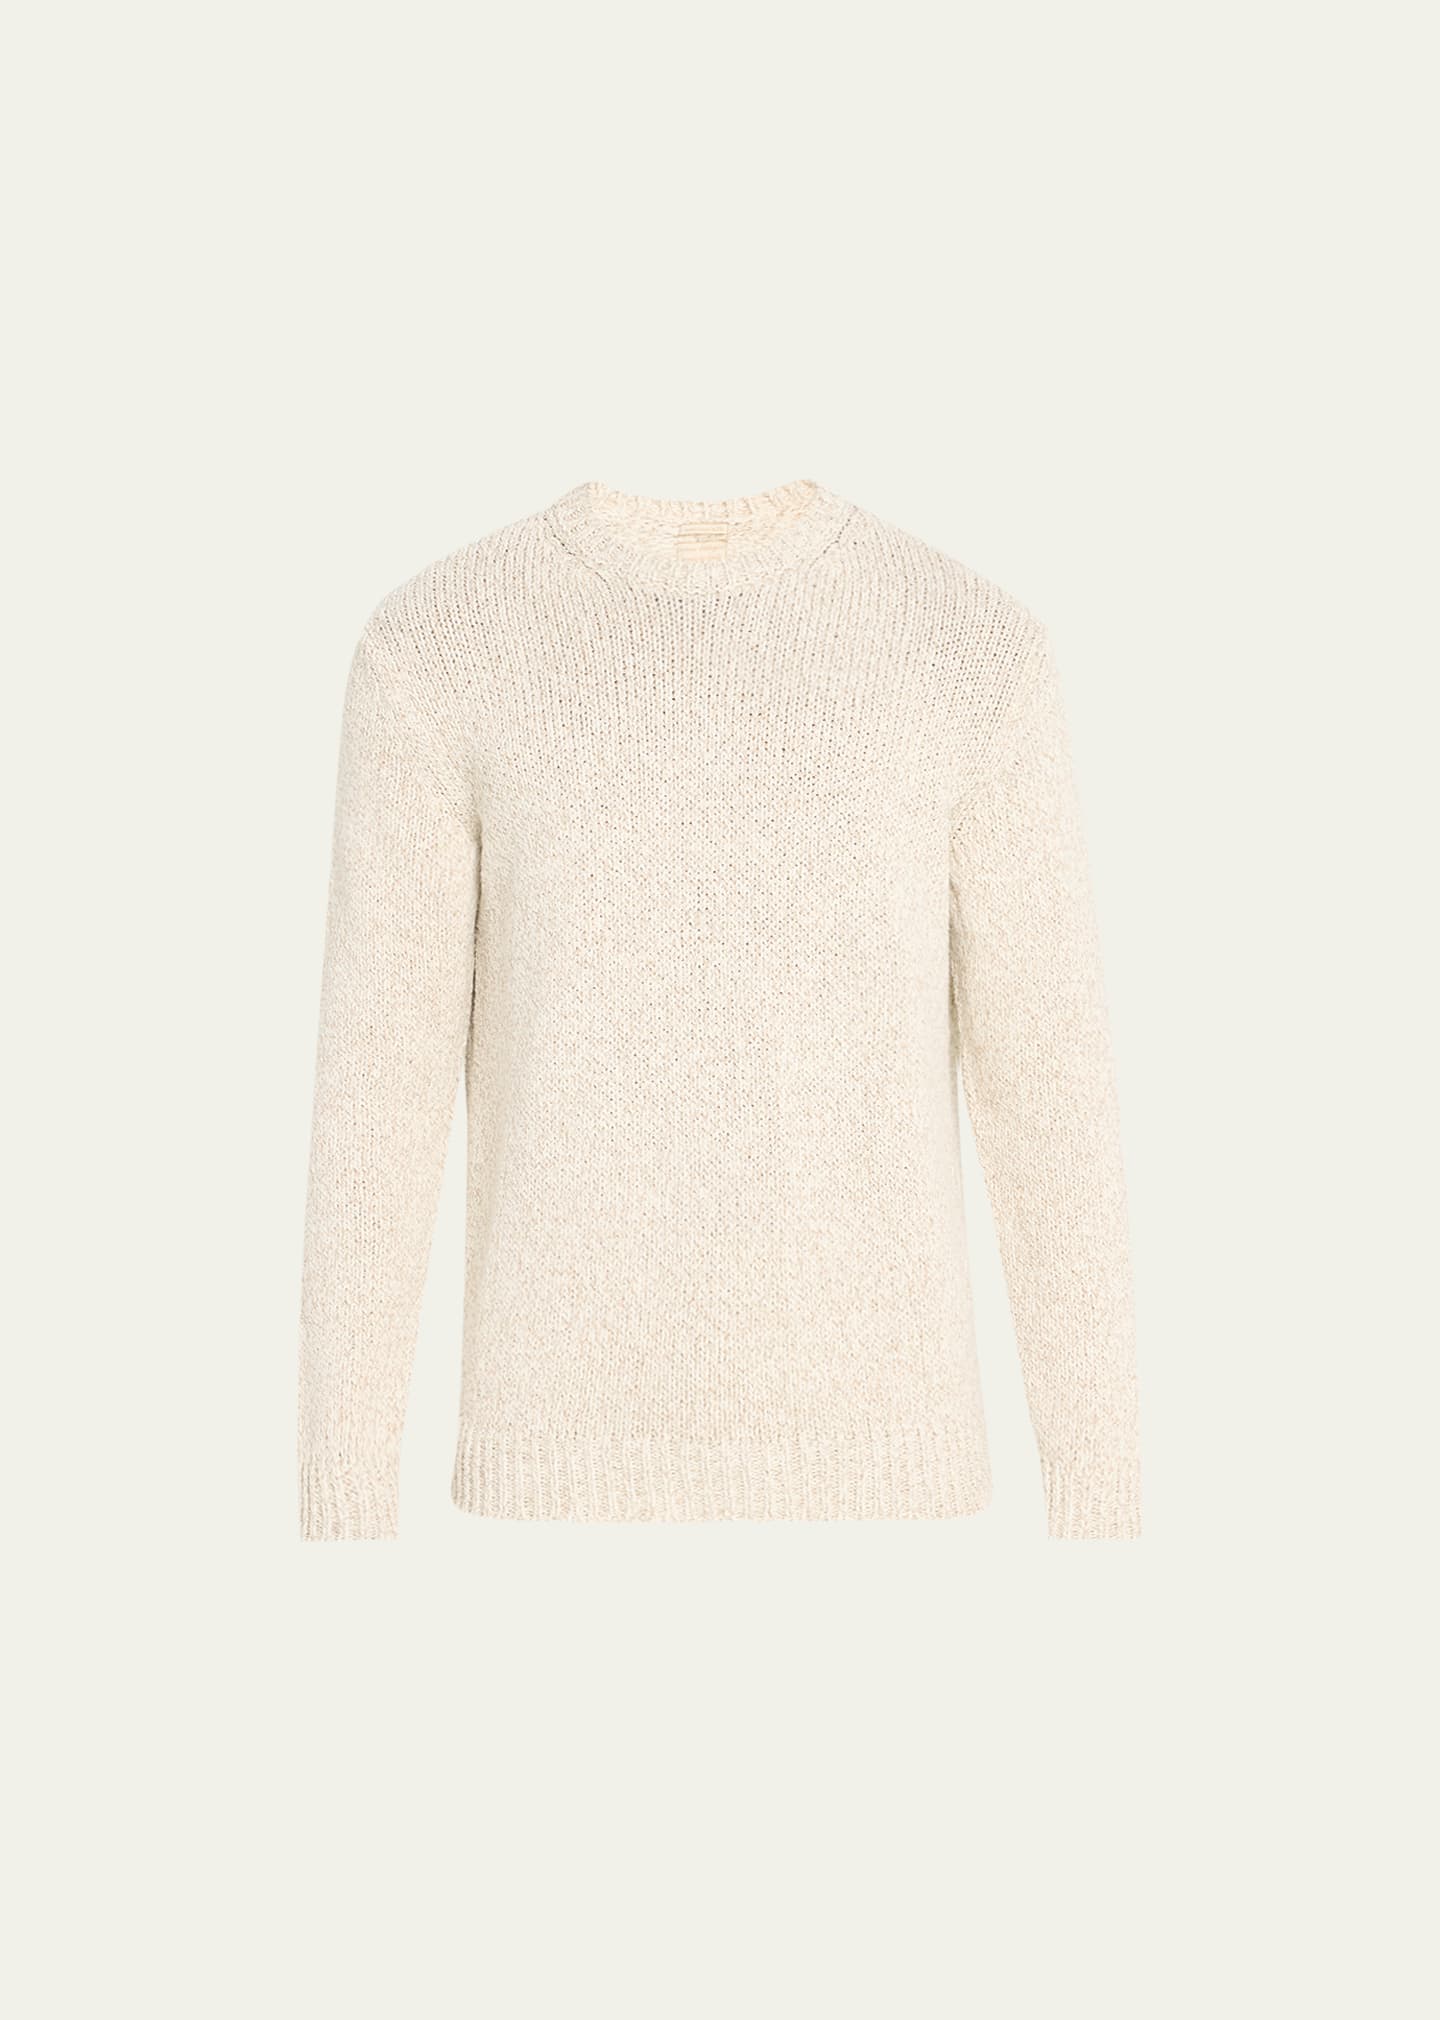 Massimo Alba Men's Knit Crewneck Sweater In Mastice